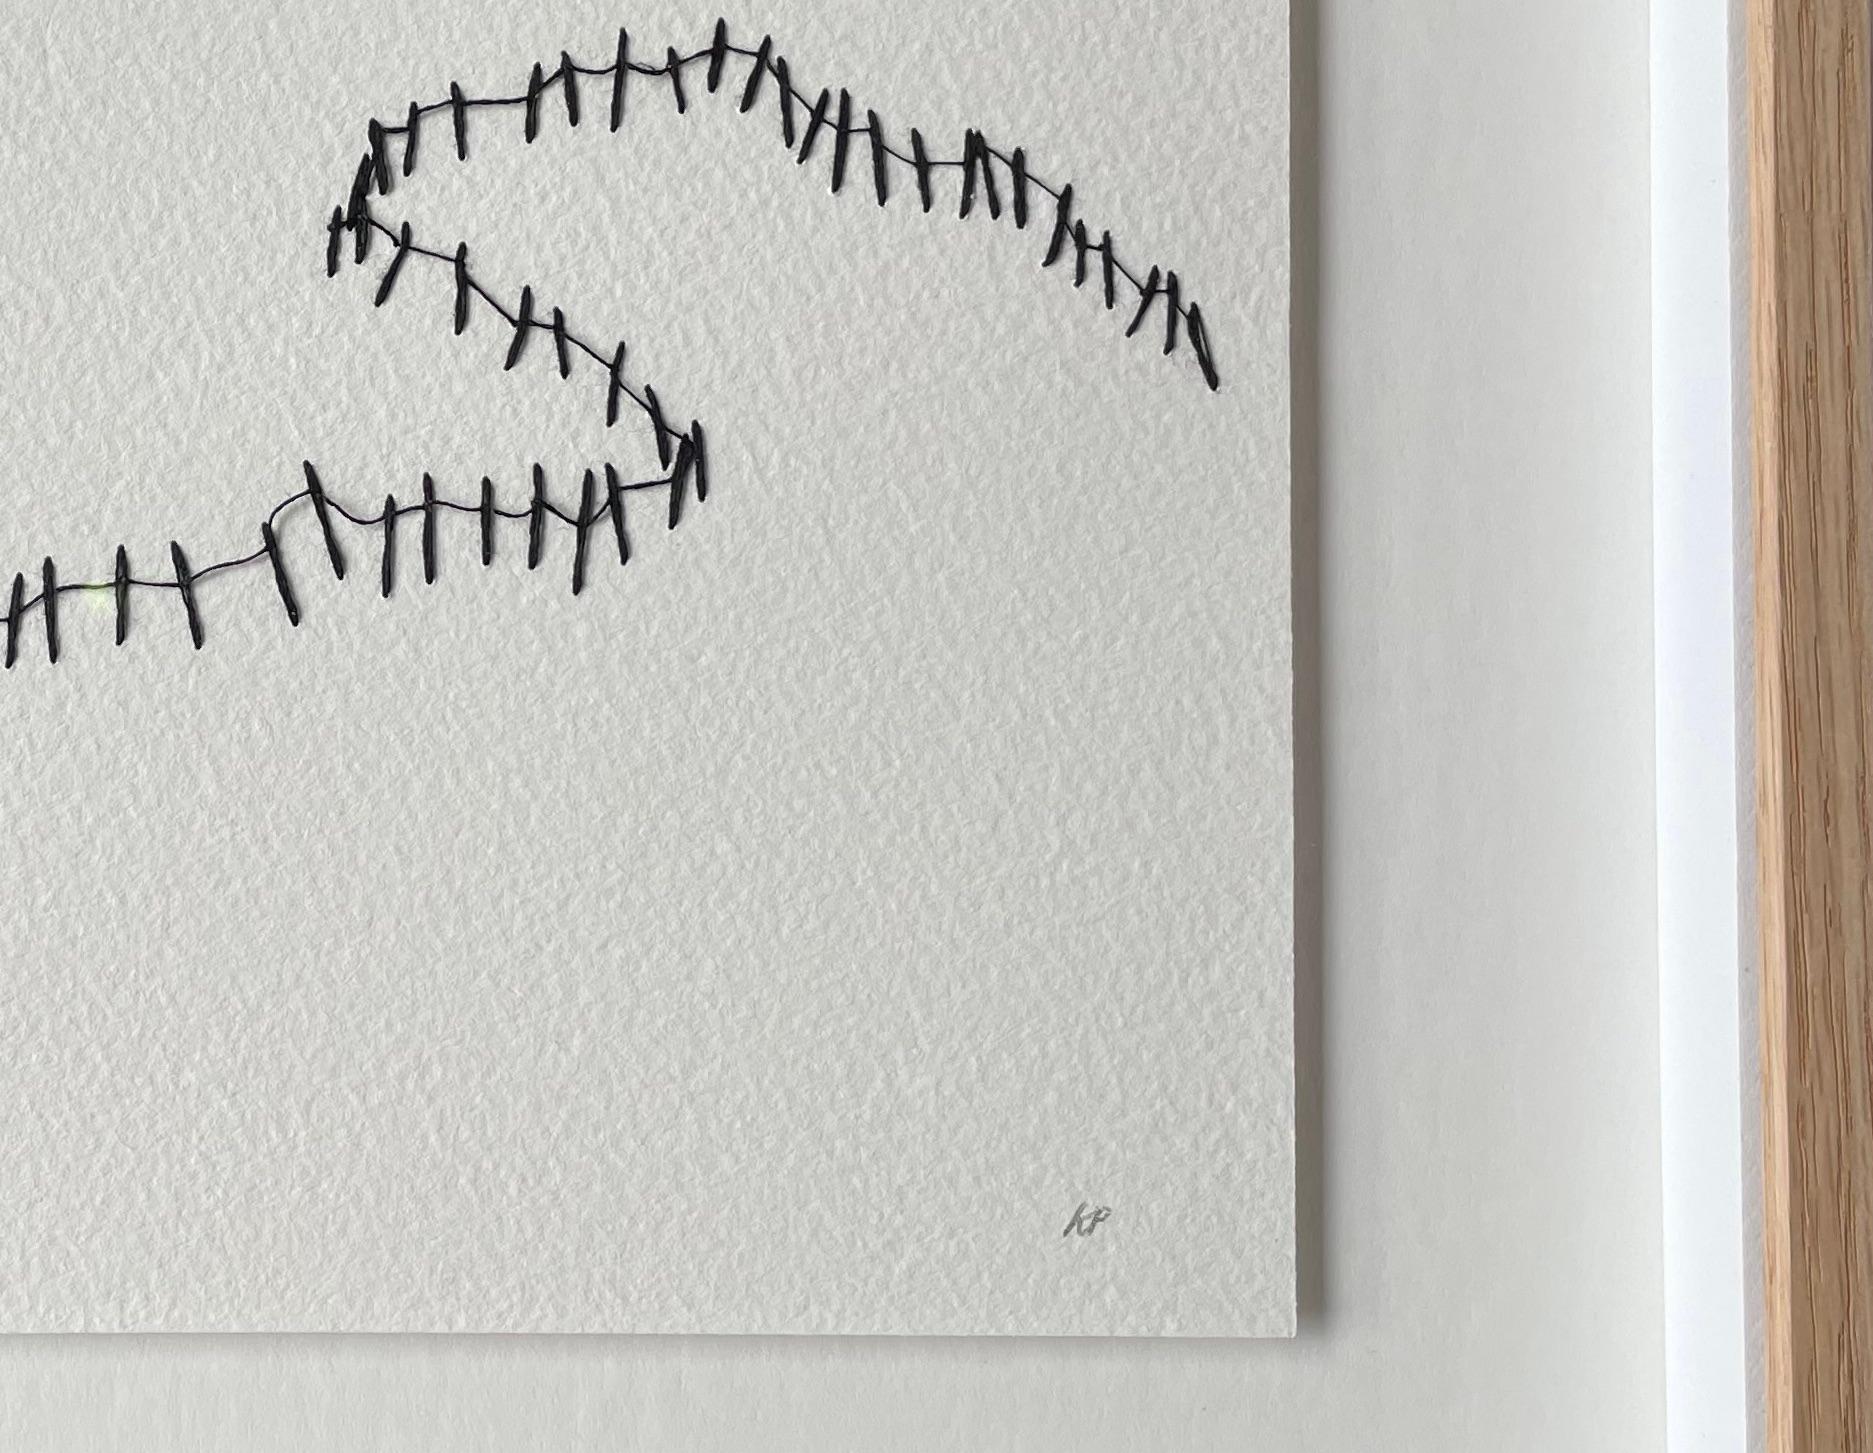 Die zeitgenössische französische Künstlerin Krystyna Pieter verwendet schwarzen Faden, um ein Zaunmuster auf weißem Hintergrund zu schaffen.
Passt gut zu P1526.
Gerahmt in gebleichter Eiche.
Signiert vom Künstler.